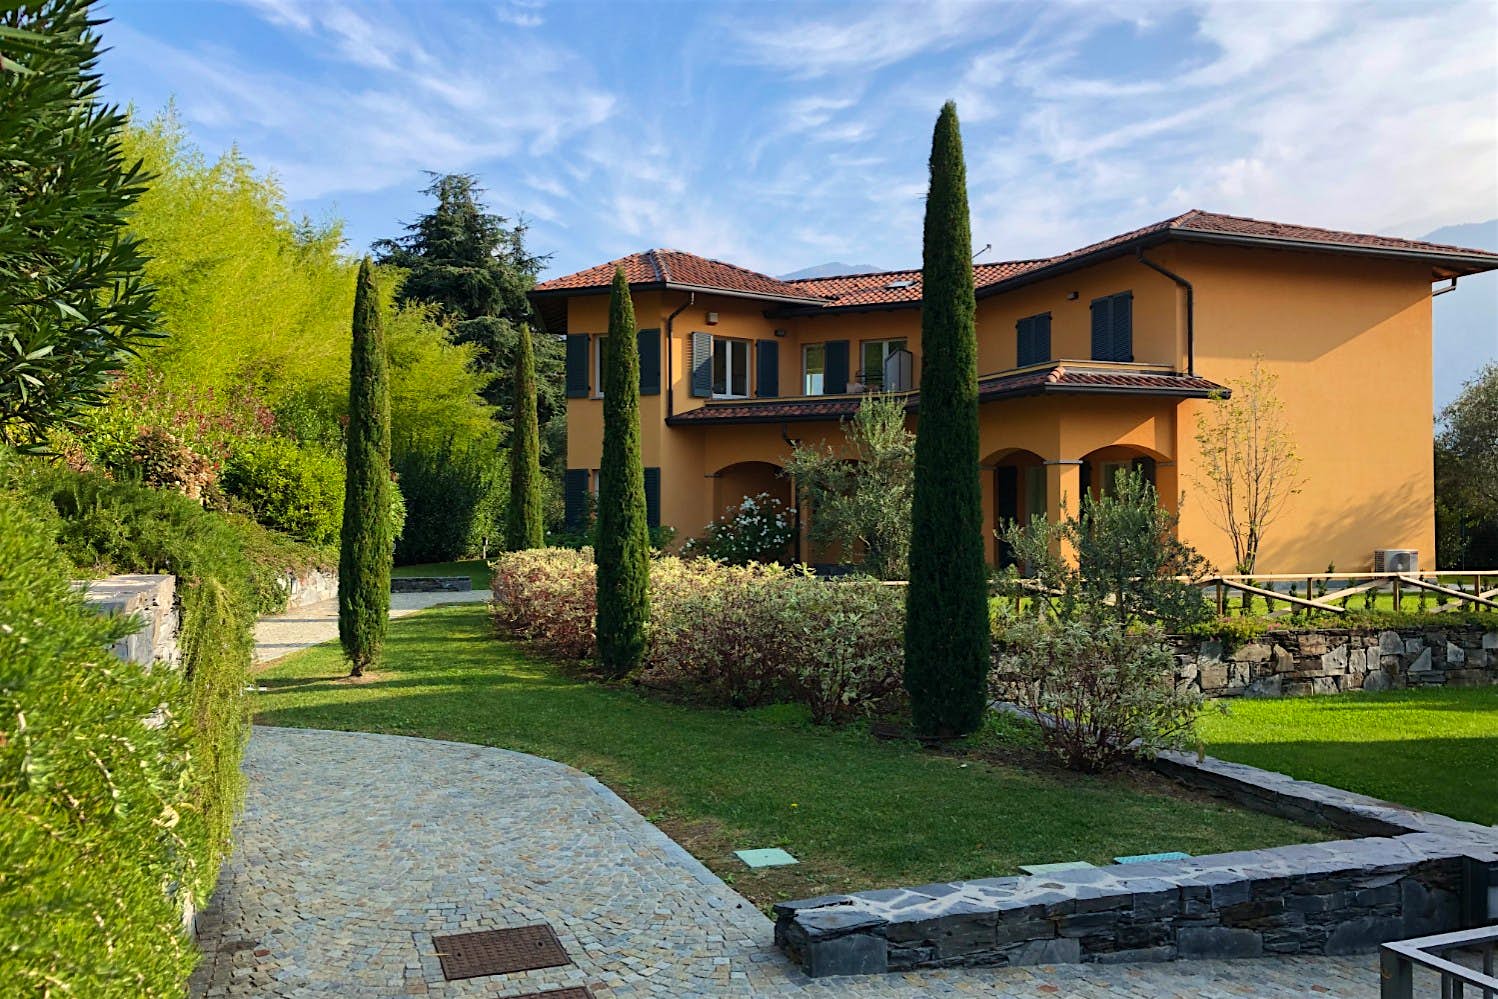 A villa set in gardens in Bellagio, Italy